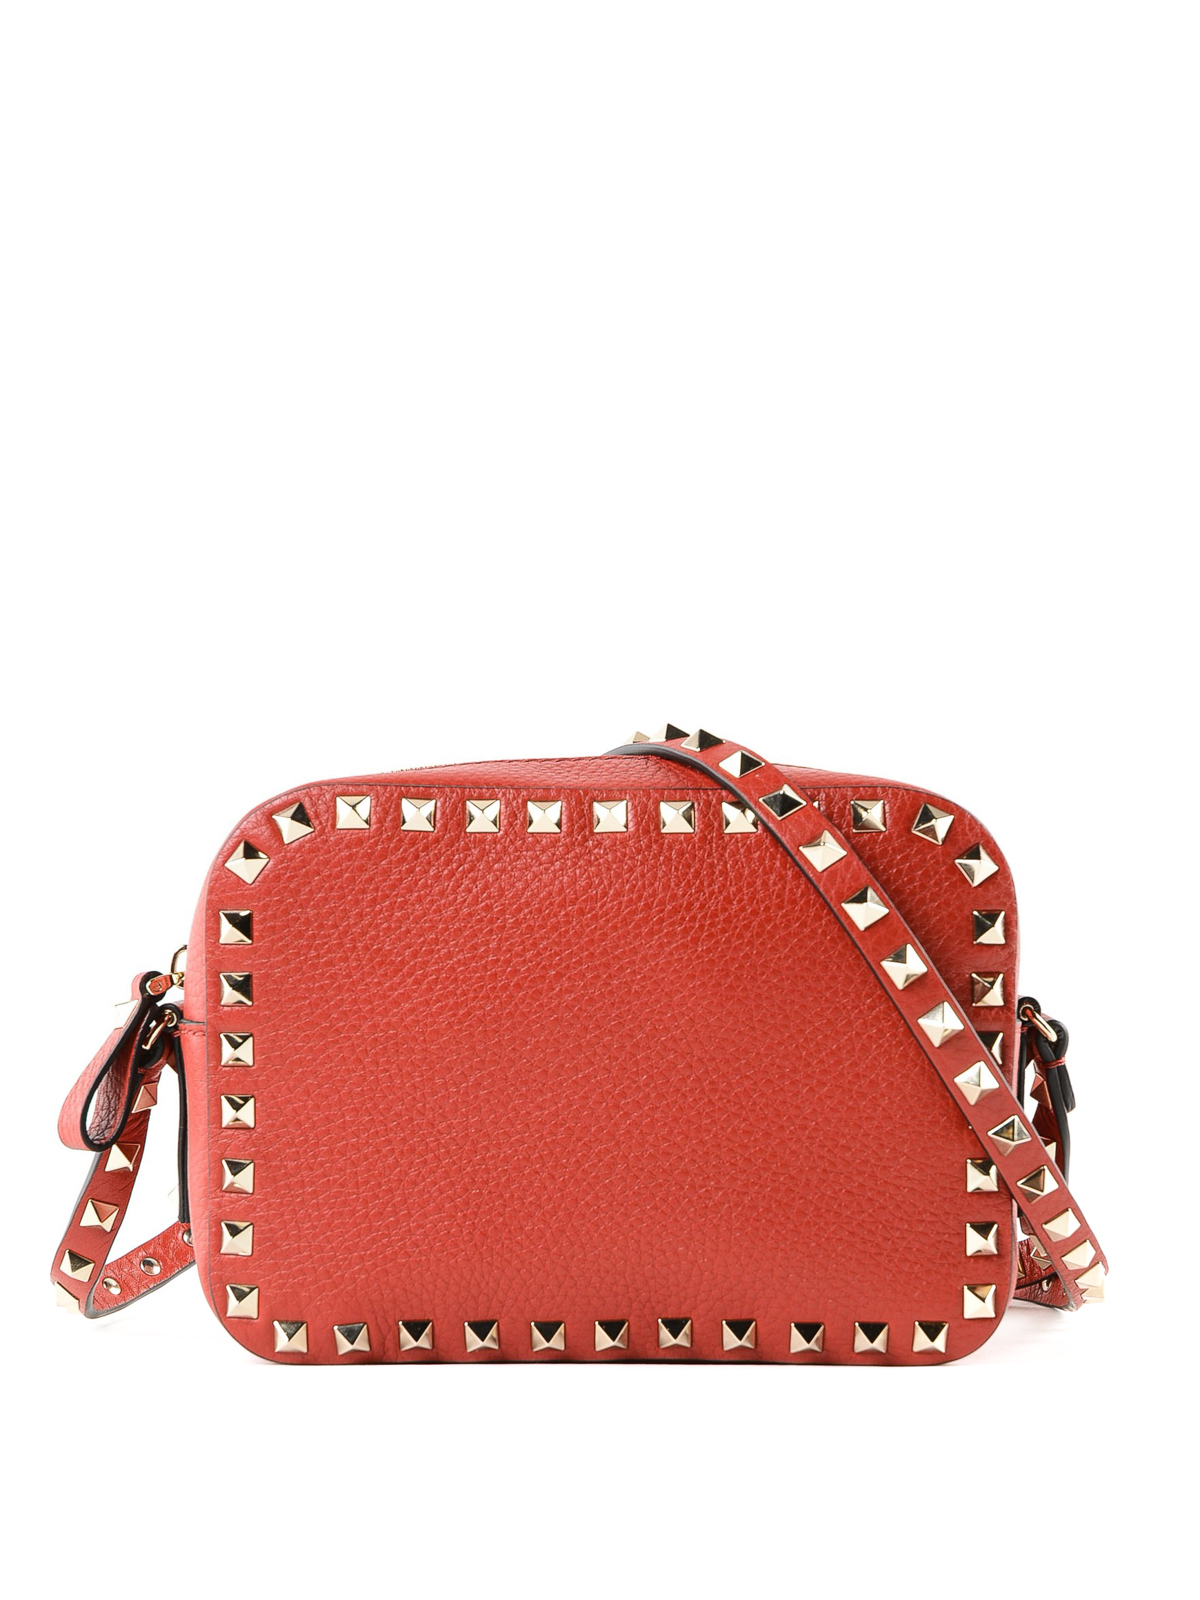 Valentino Red Rockstud Shoulder Bag